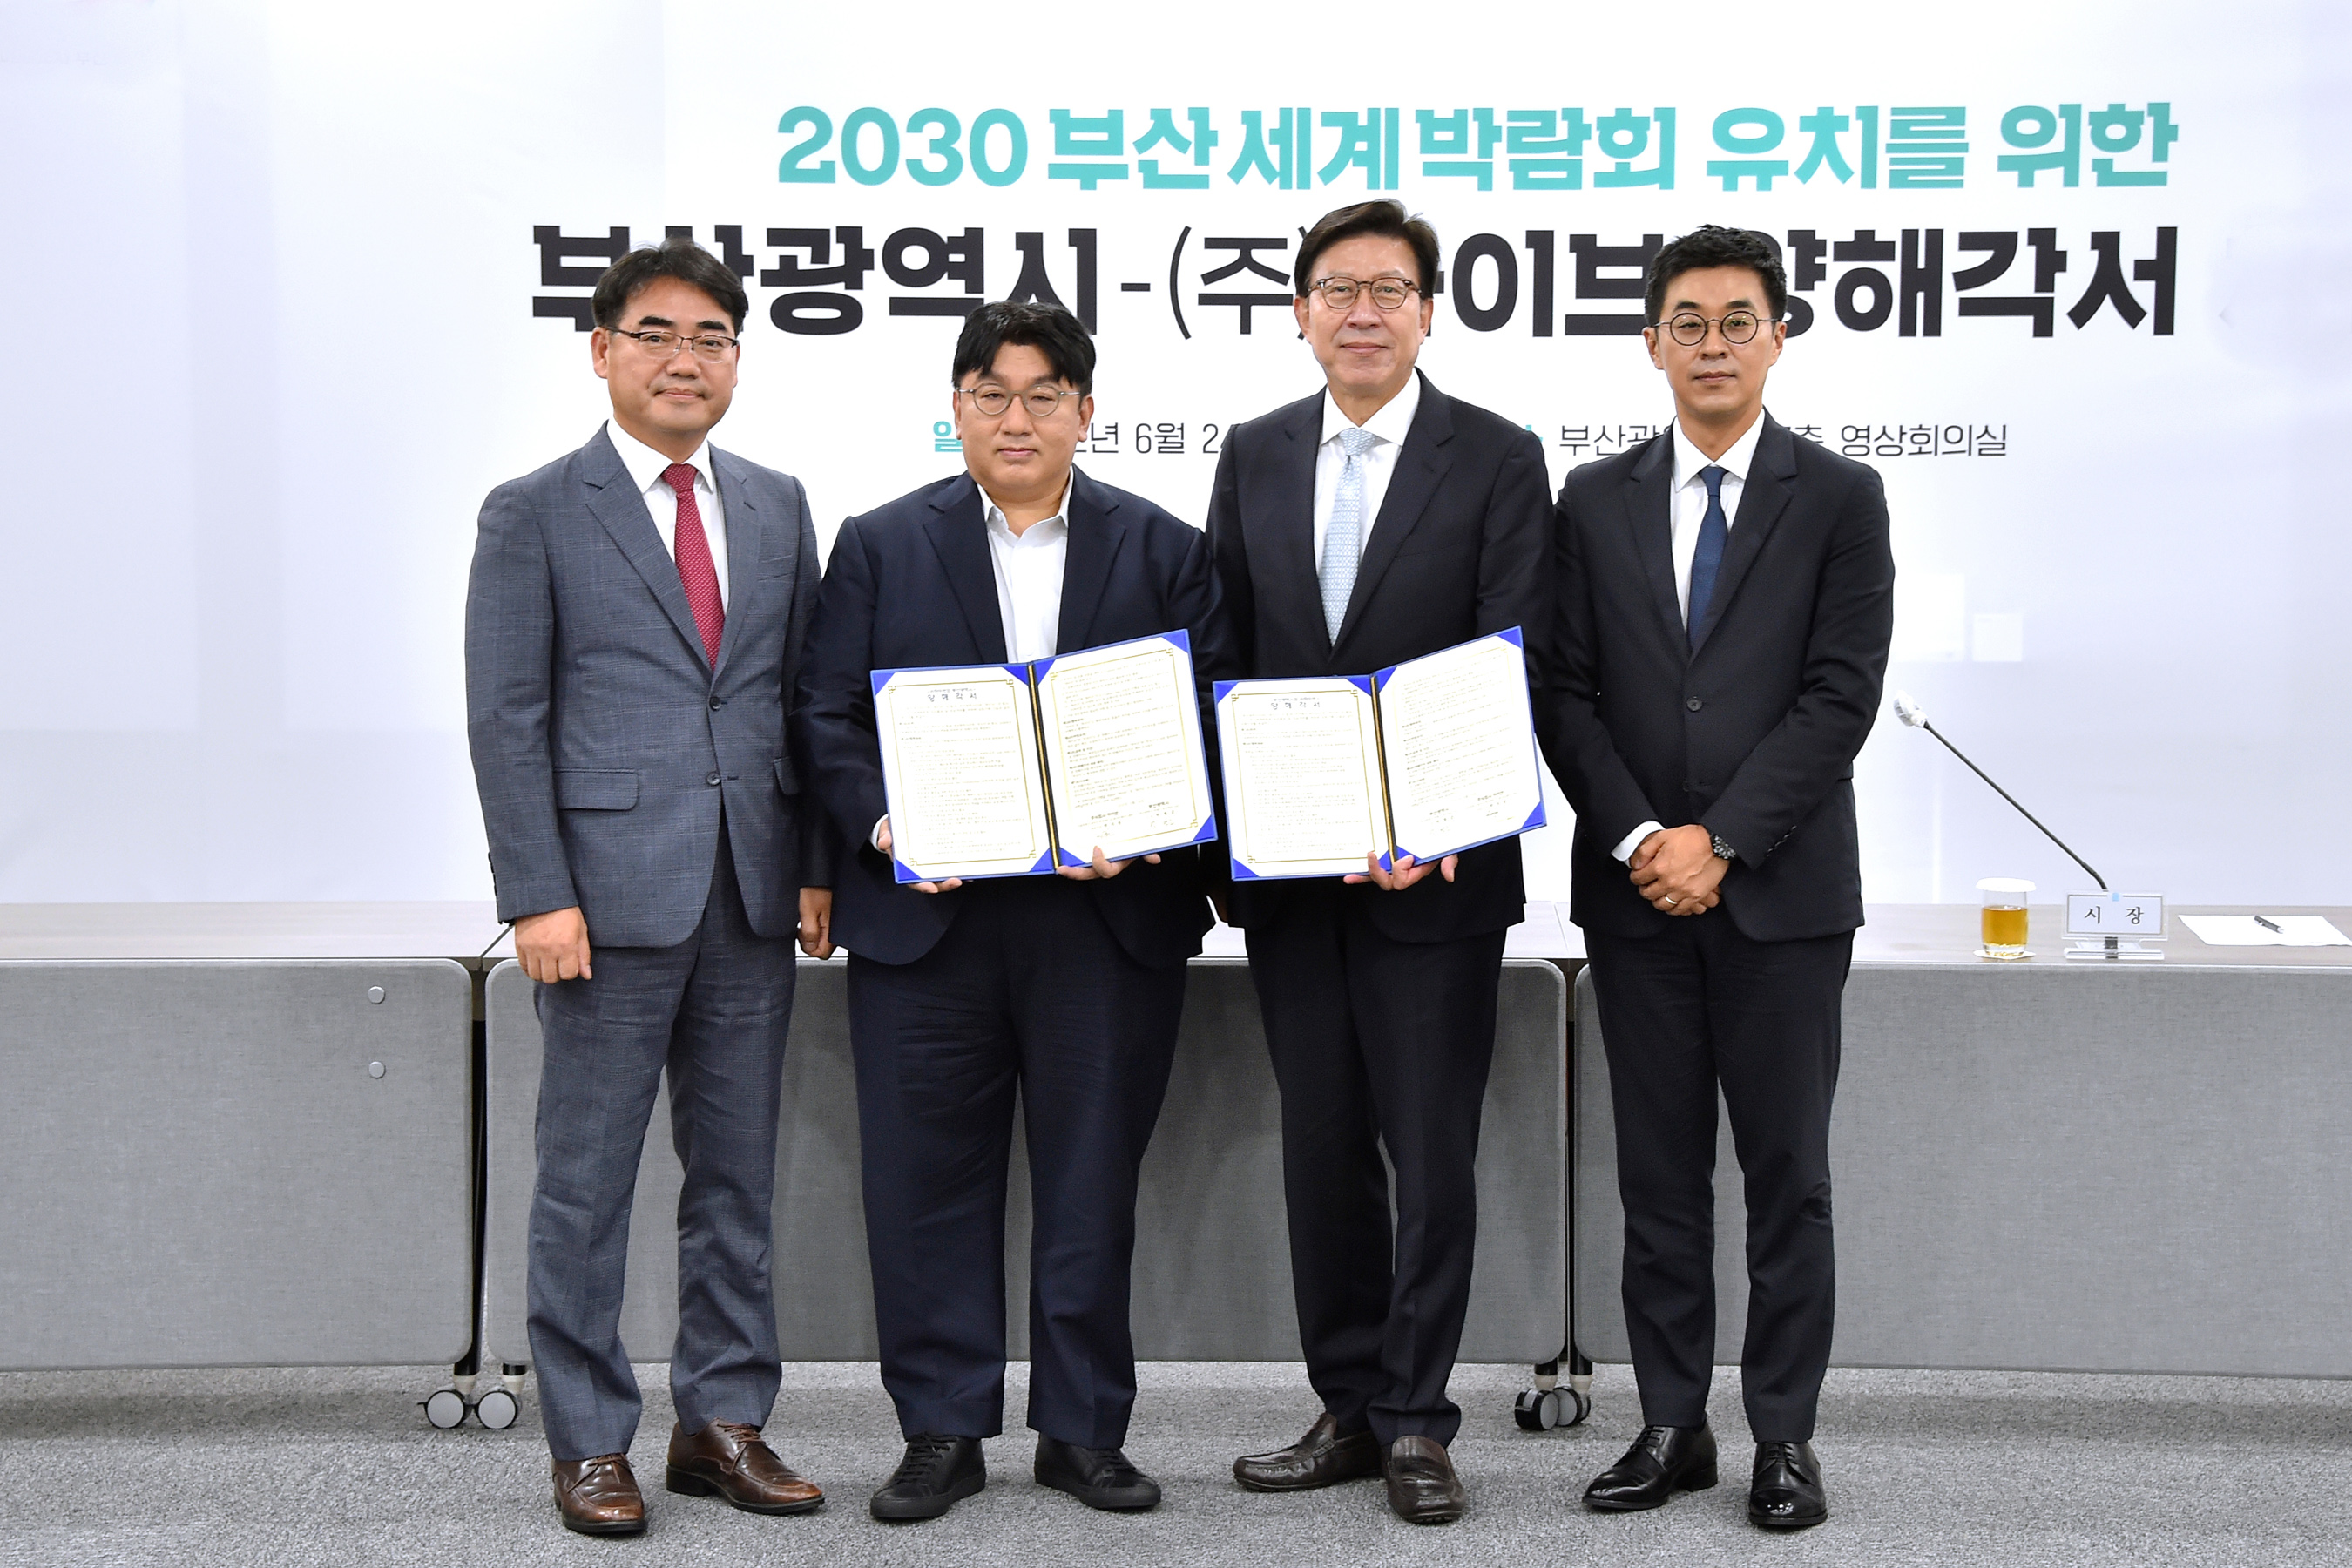 20220624 2030부산세계박람회 유치홍보 부산시-(주)하이브 양해각서 체결식  사진4